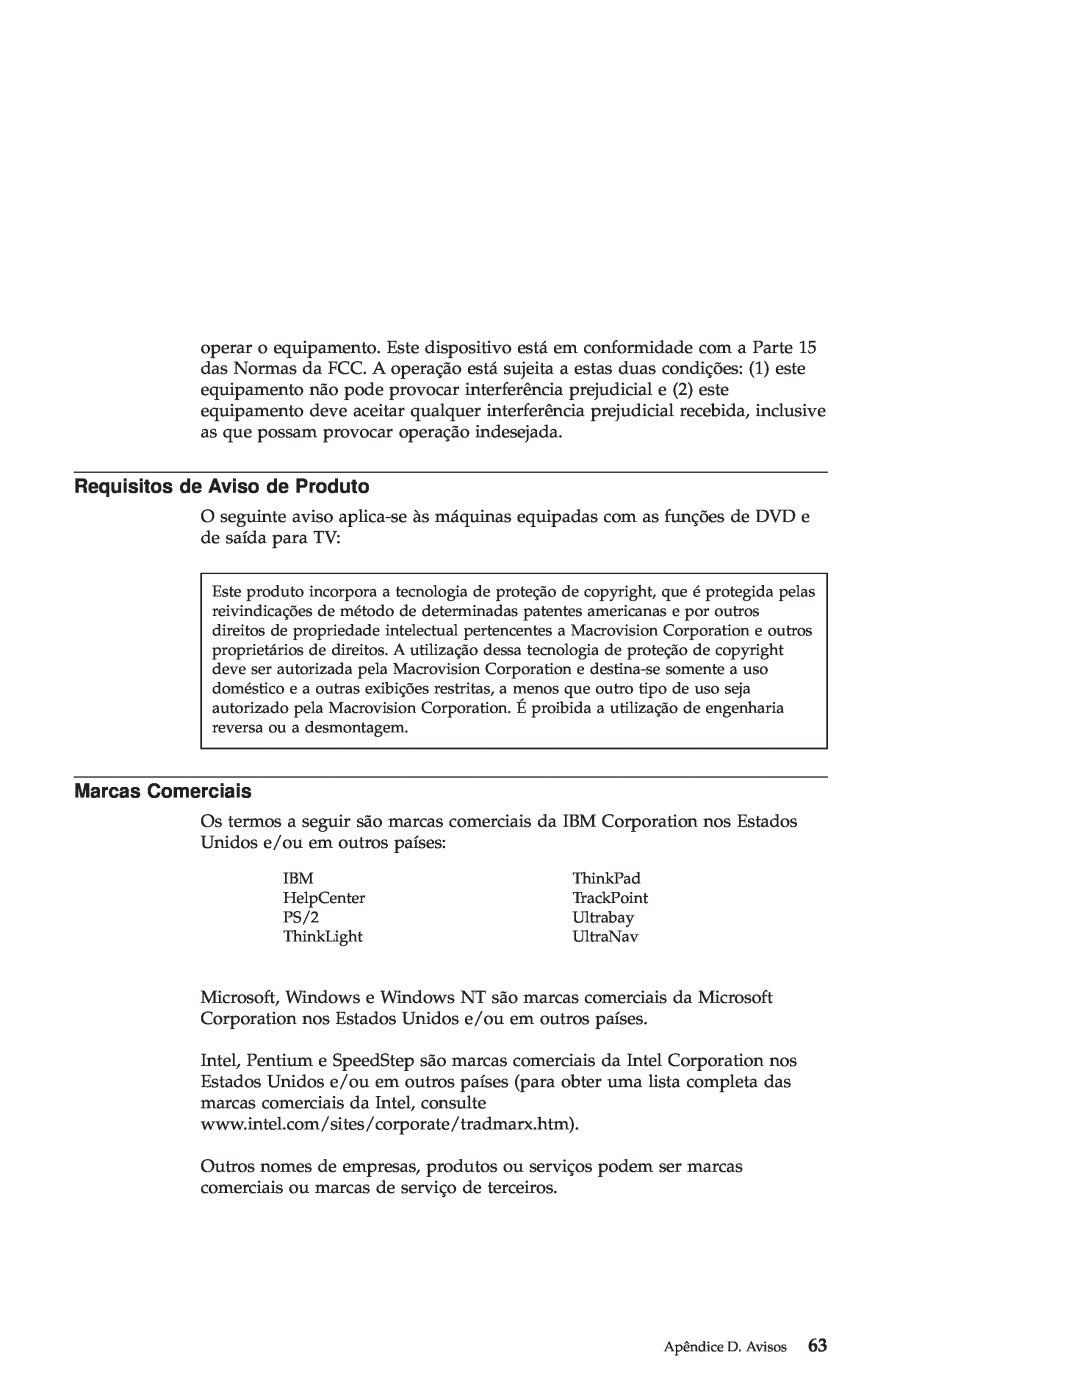 IBM R50 manual Requisitos de Aviso de Produto, Marcas Comerciais 